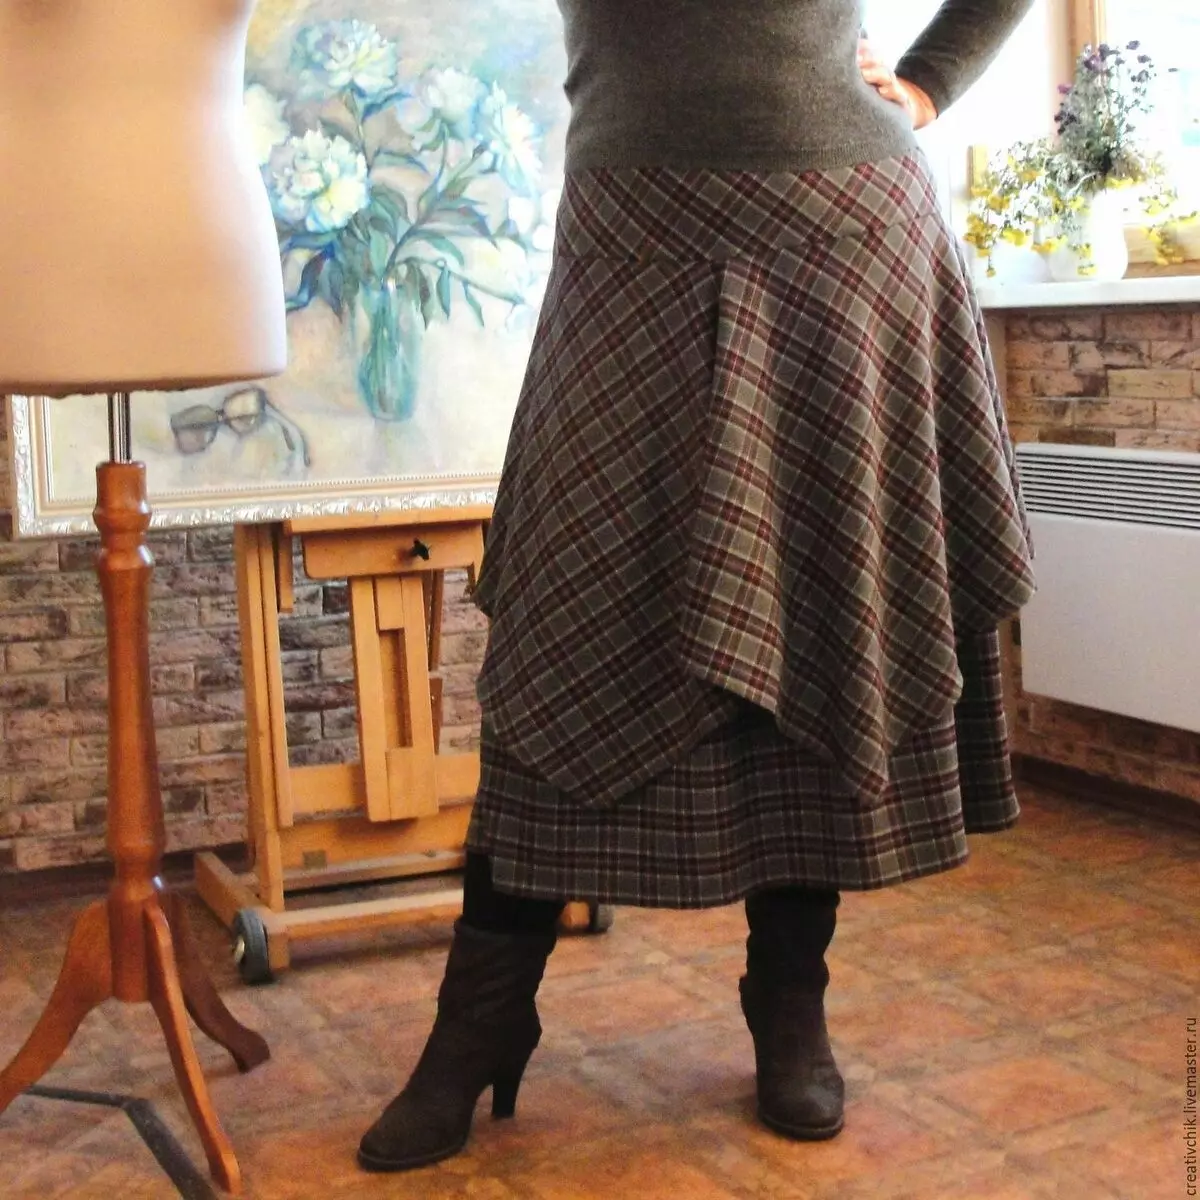 Stile BOCHO per le donne dopo 50 anni (80 foto): bastoncini per signore complete e sottili, giacche estive e altri vestiti nello stile di boho-chic 3659_49